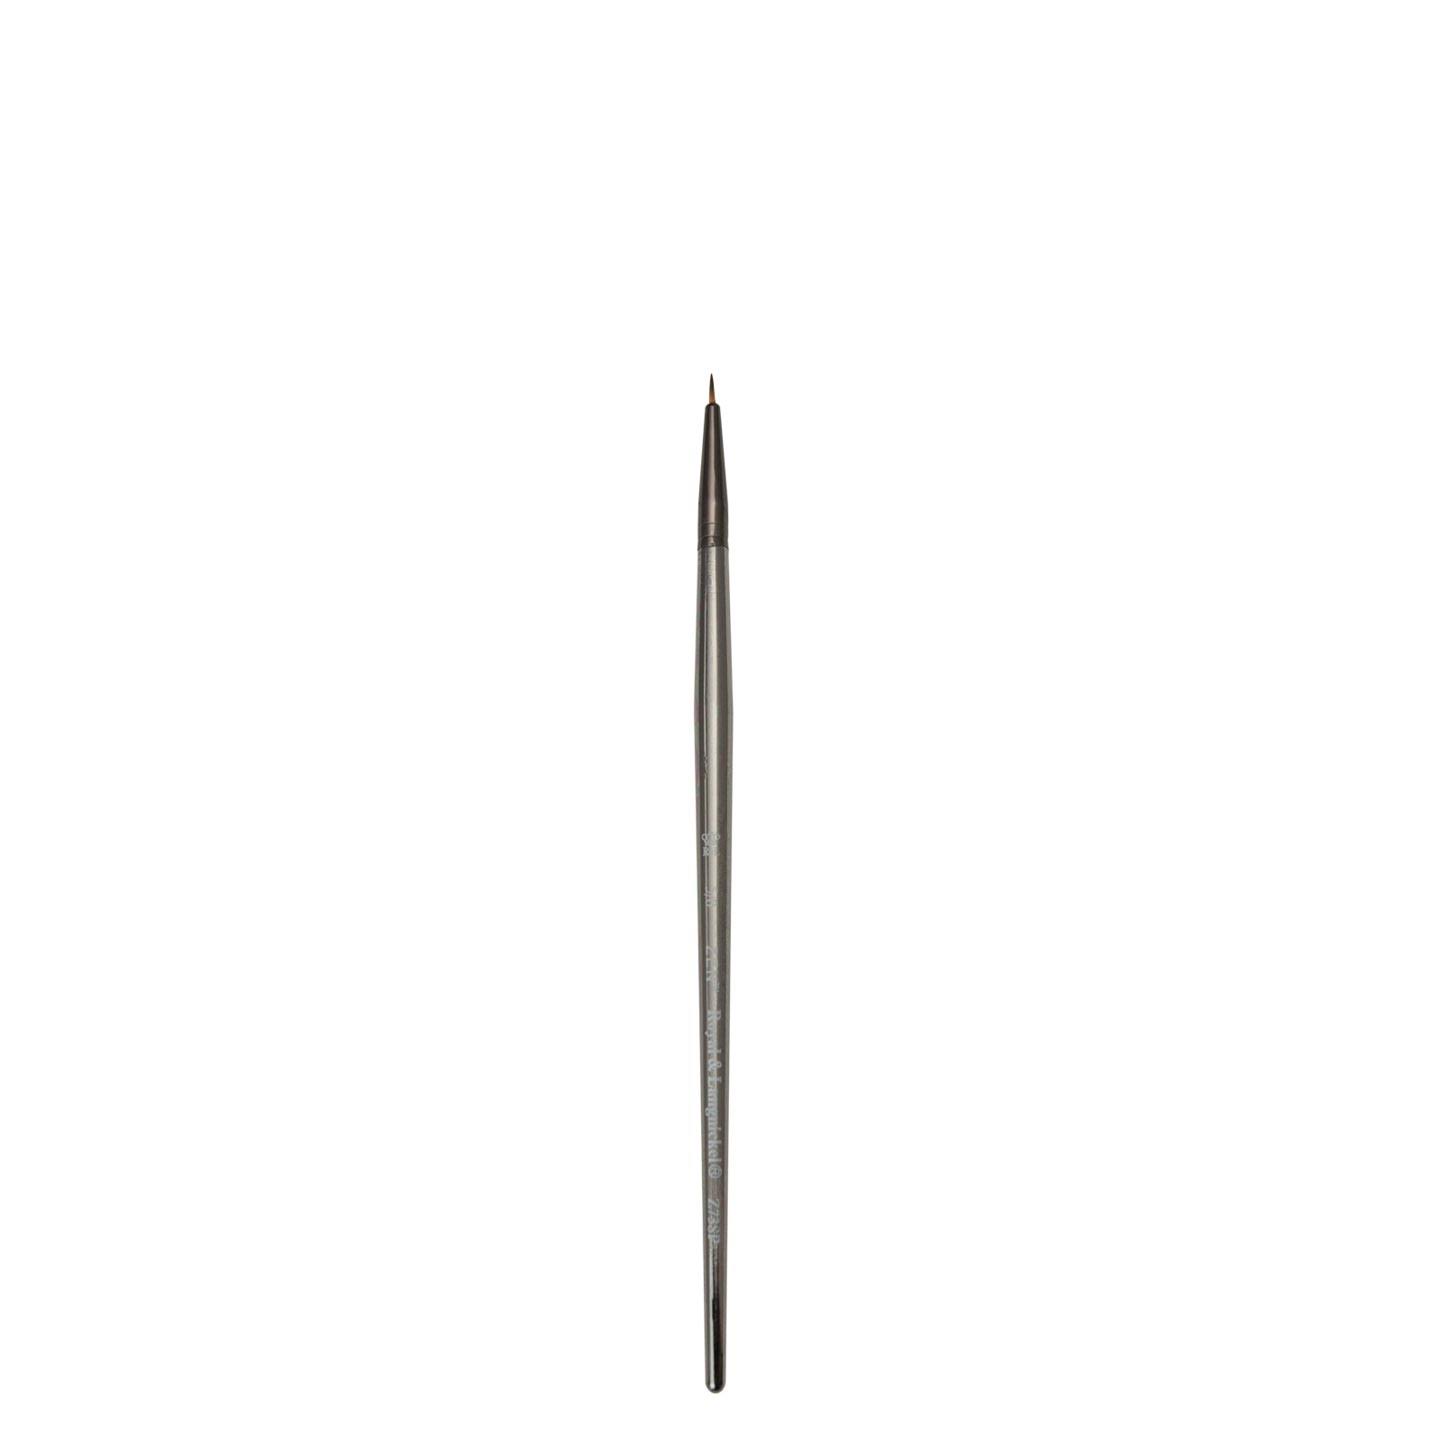 Royal & Langnickel Zen Brush - Size 5/0